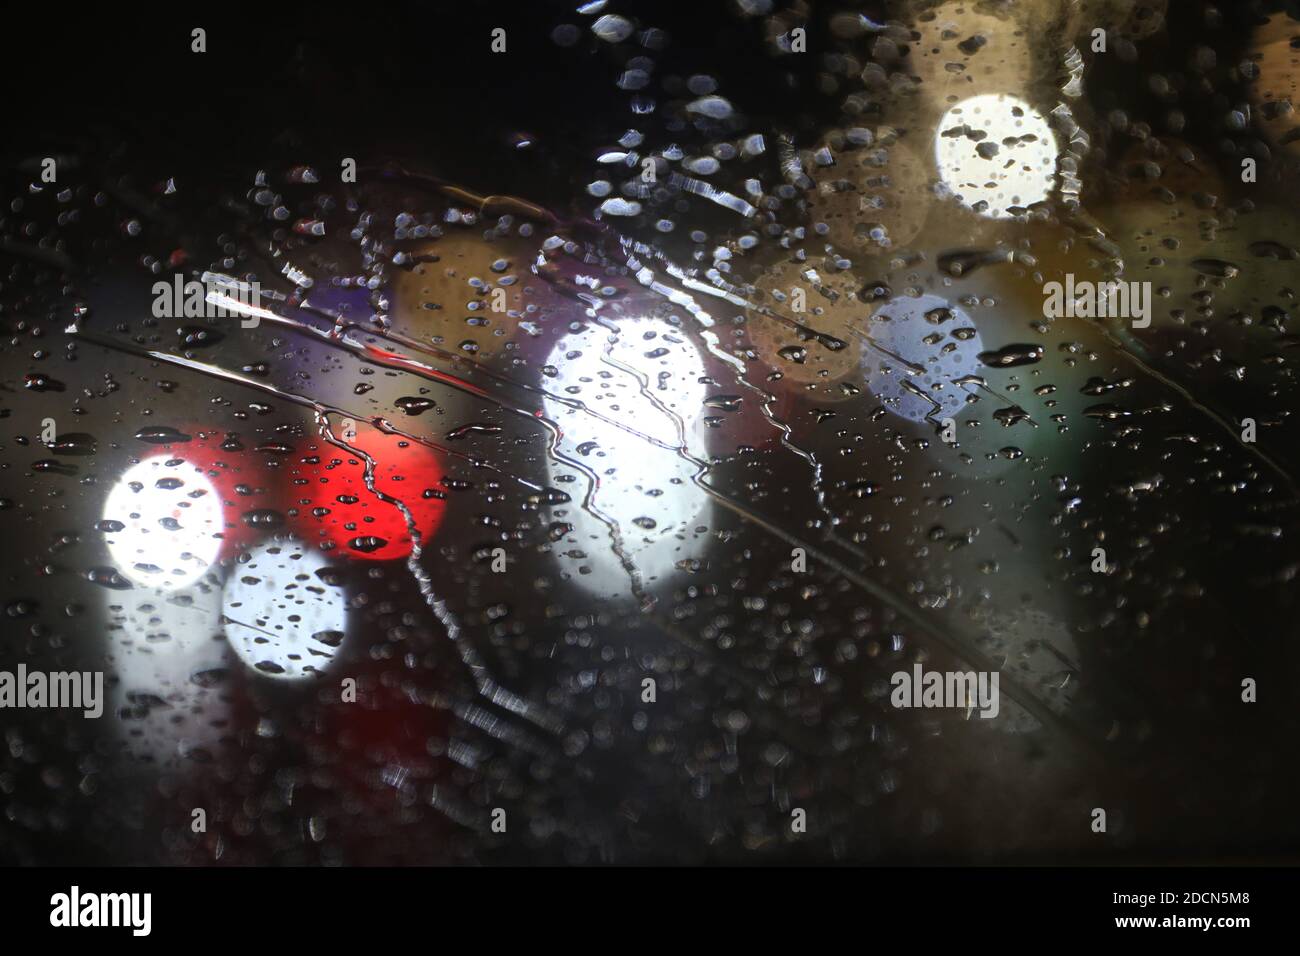 MJÖLBY, SCHWEDEN- 21. NOVEMBER 2020: Regentropfen an der Windschutzscheibe eines Autos an einem regnerischen Herbsttag. Foto Jeppe Gustafsson Stockfoto